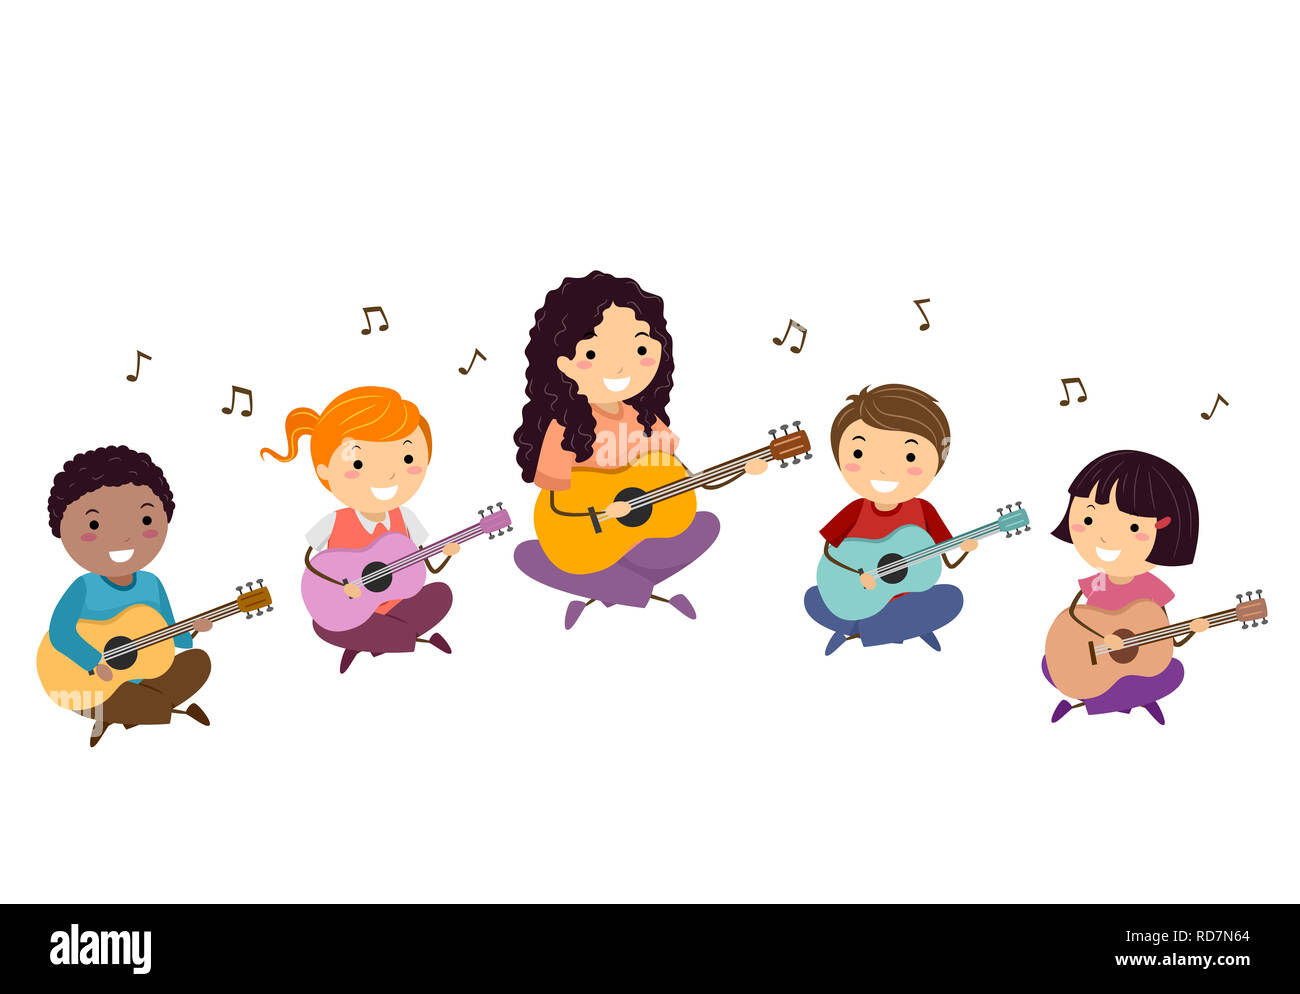 Illustration de Stickman Kids avec l'enseignant à jouer de la guitare avec les notes de musique flottant autour Banque D'Images